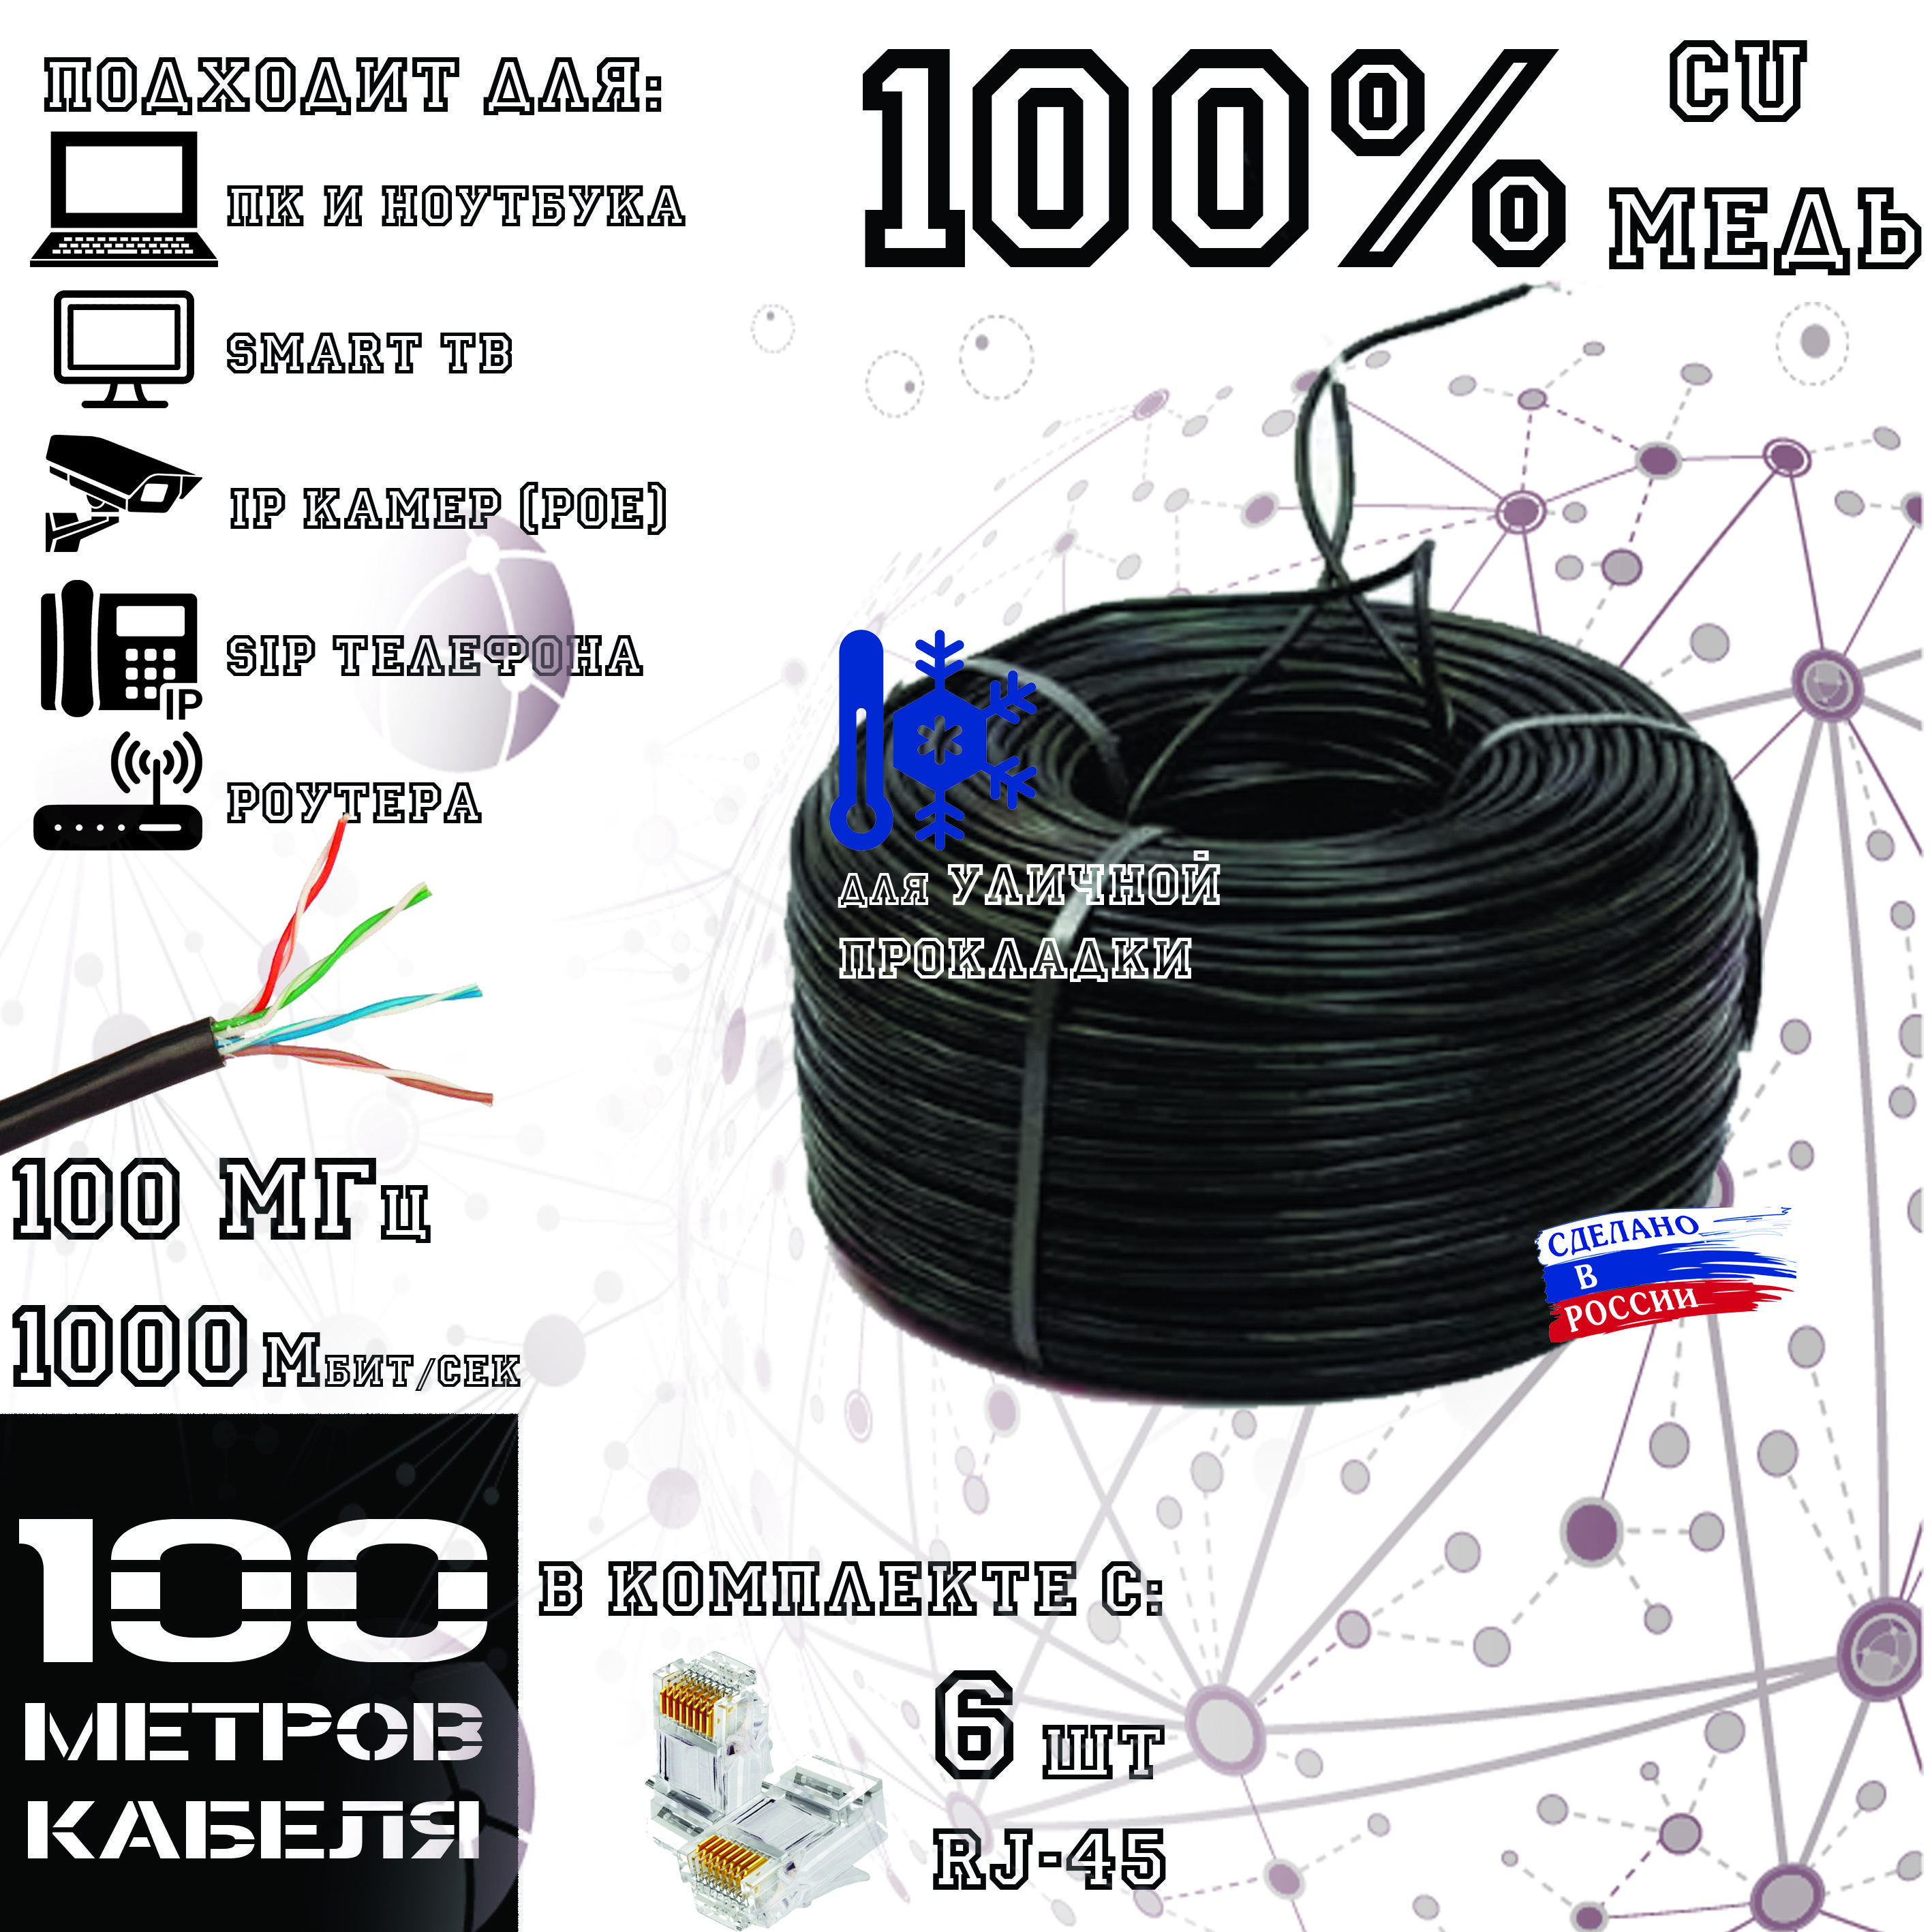 Высококачественный интернет кабель (витая пара) ПОЛИМЕТ, CU, UTP4 пары, Cat.5е, outdoor